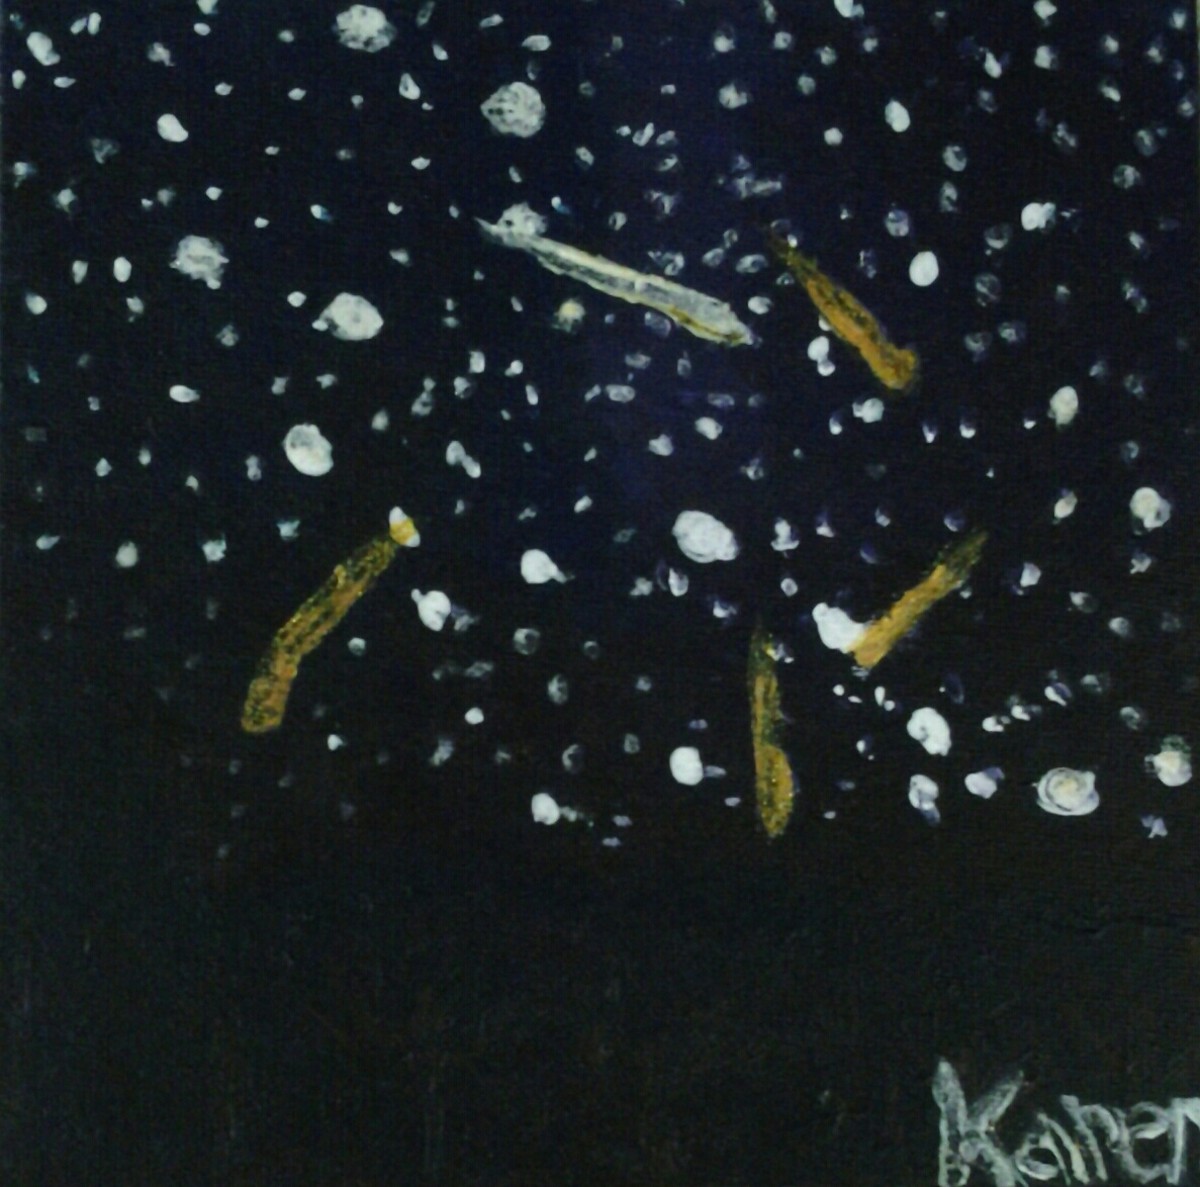 Perseid meteors, August 2015